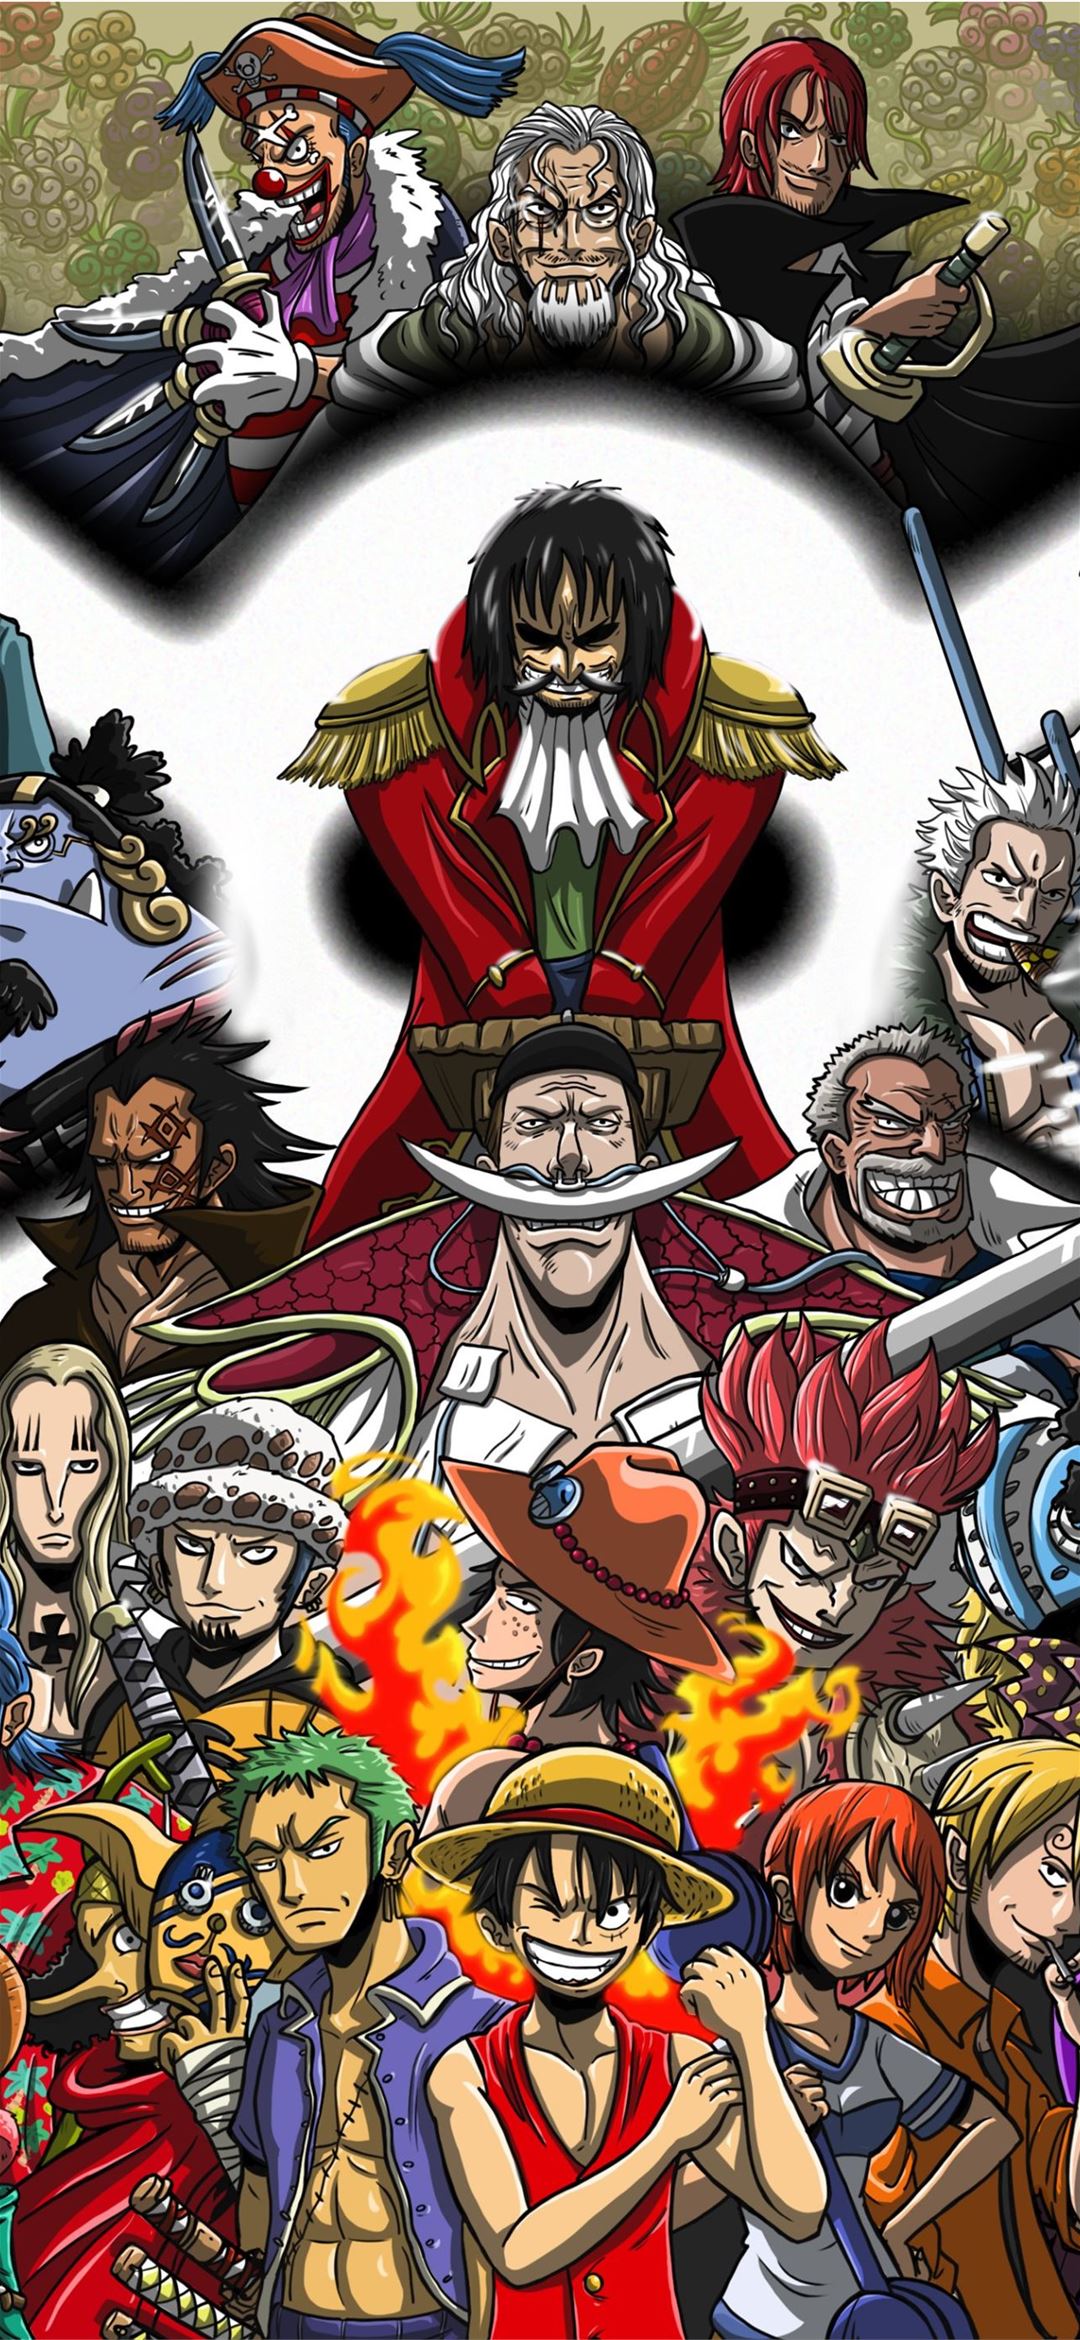 Gold D Roger - vị hoàng đế huyền thoại trong bộ truyện One Piece đã để lại trong tiếng vang lịch sử của thế giới Ngũ Hải Tặc. Hãy thưởng thức những hình ảnh đầy nghị lực và sự kiên cường của ông, chắc chắn sẽ đem lại nhiều cảm hứng cho bạn.